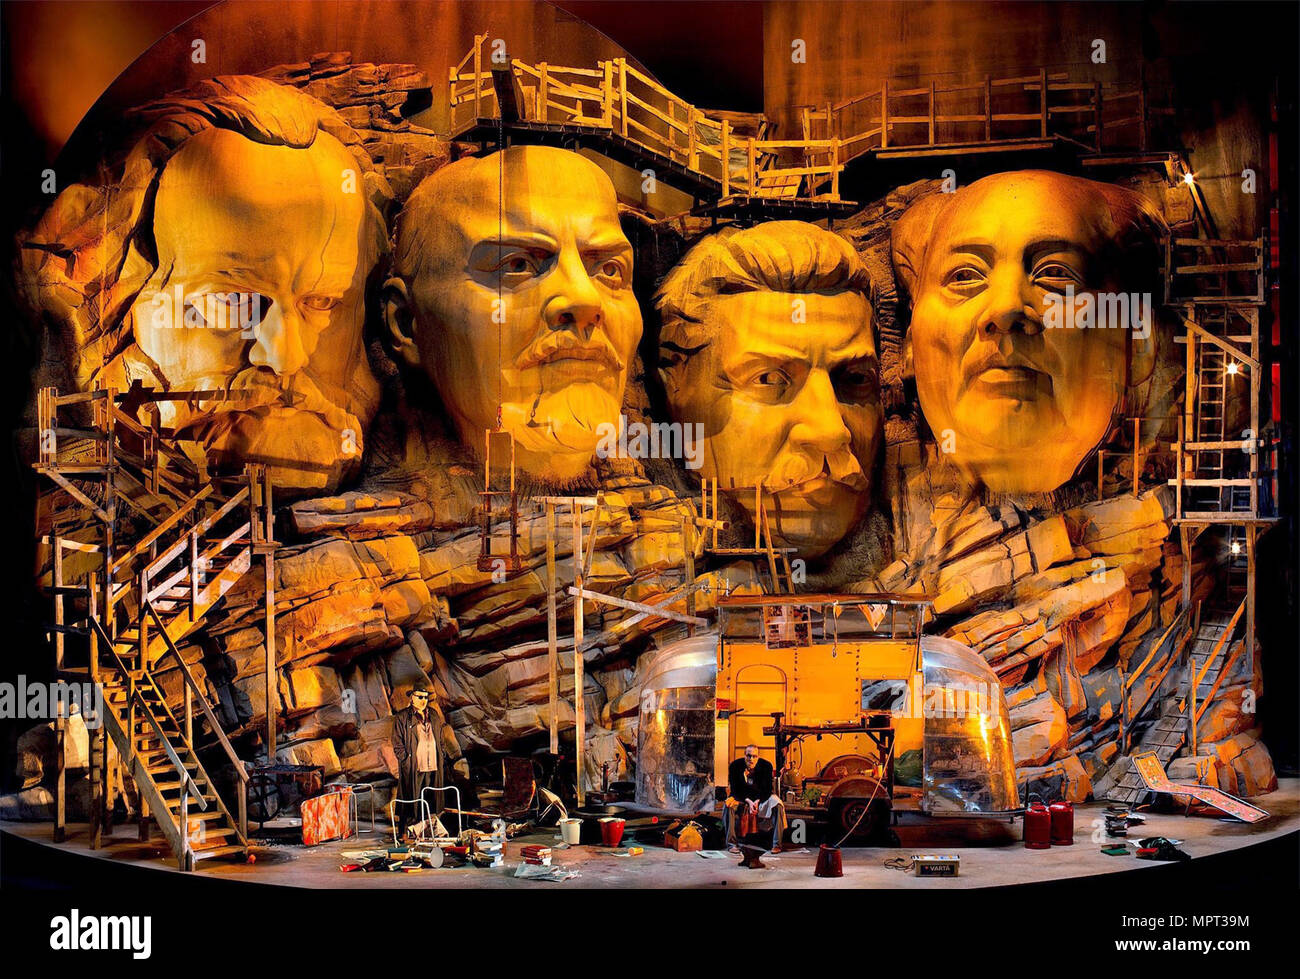 Frank Castorf's Der Ring des Nibelungen in Bayreuth, 2013. Stock Photo